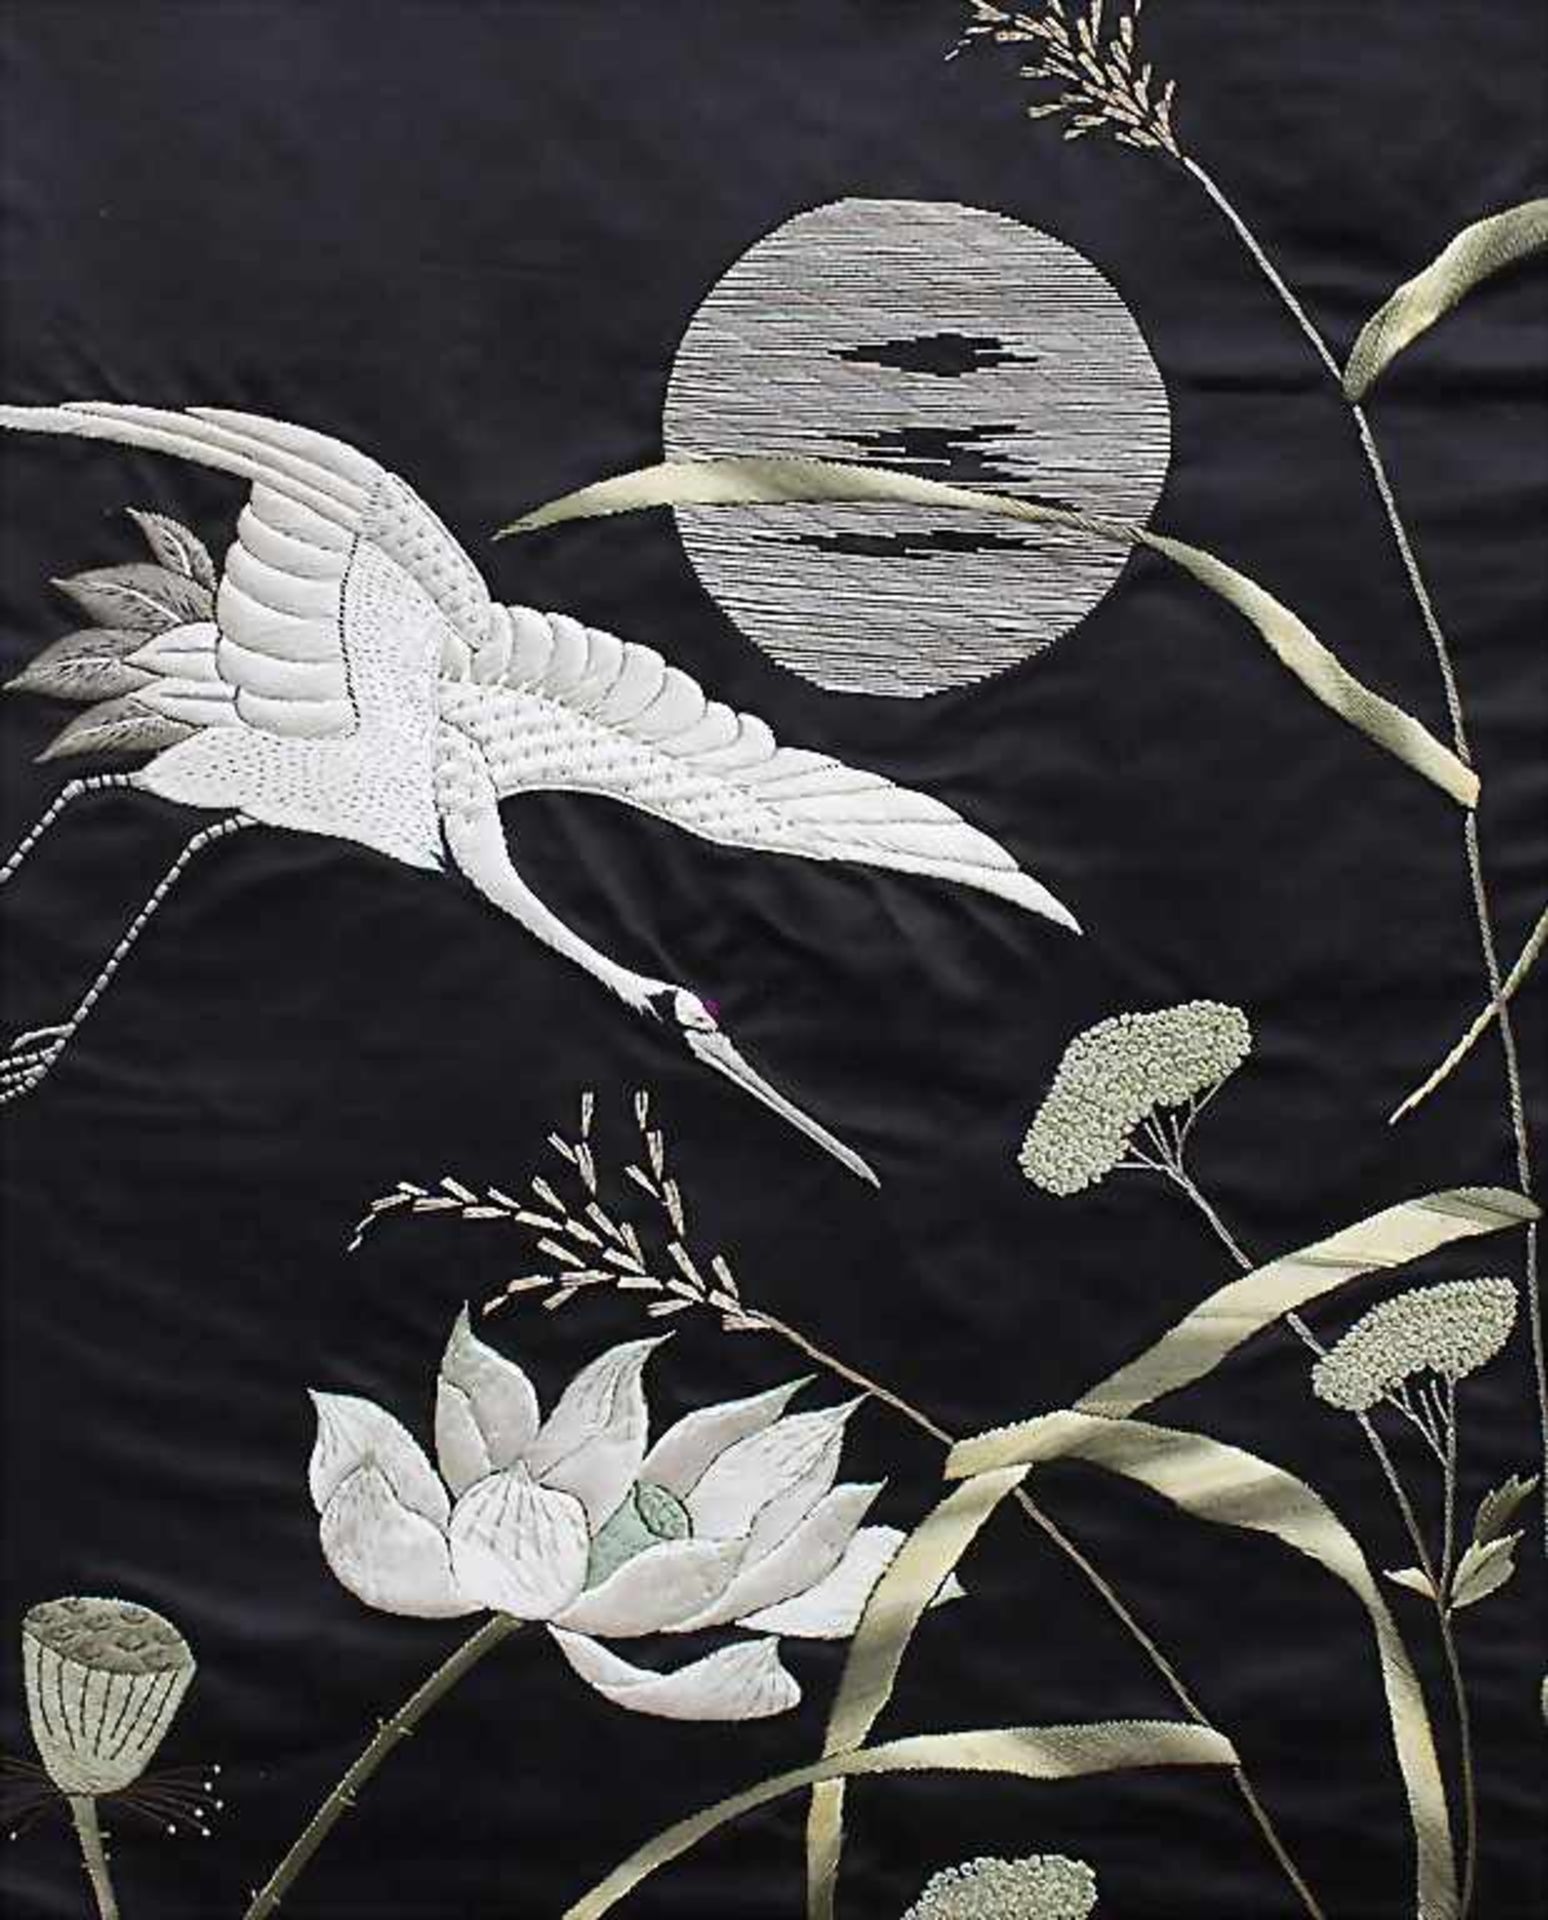 Seiden-Wandbehang 'Kranich'/ A silk wall hanging 'Crane', China, 1. Hälfte 20. Jh.Material: - Image 2 of 3